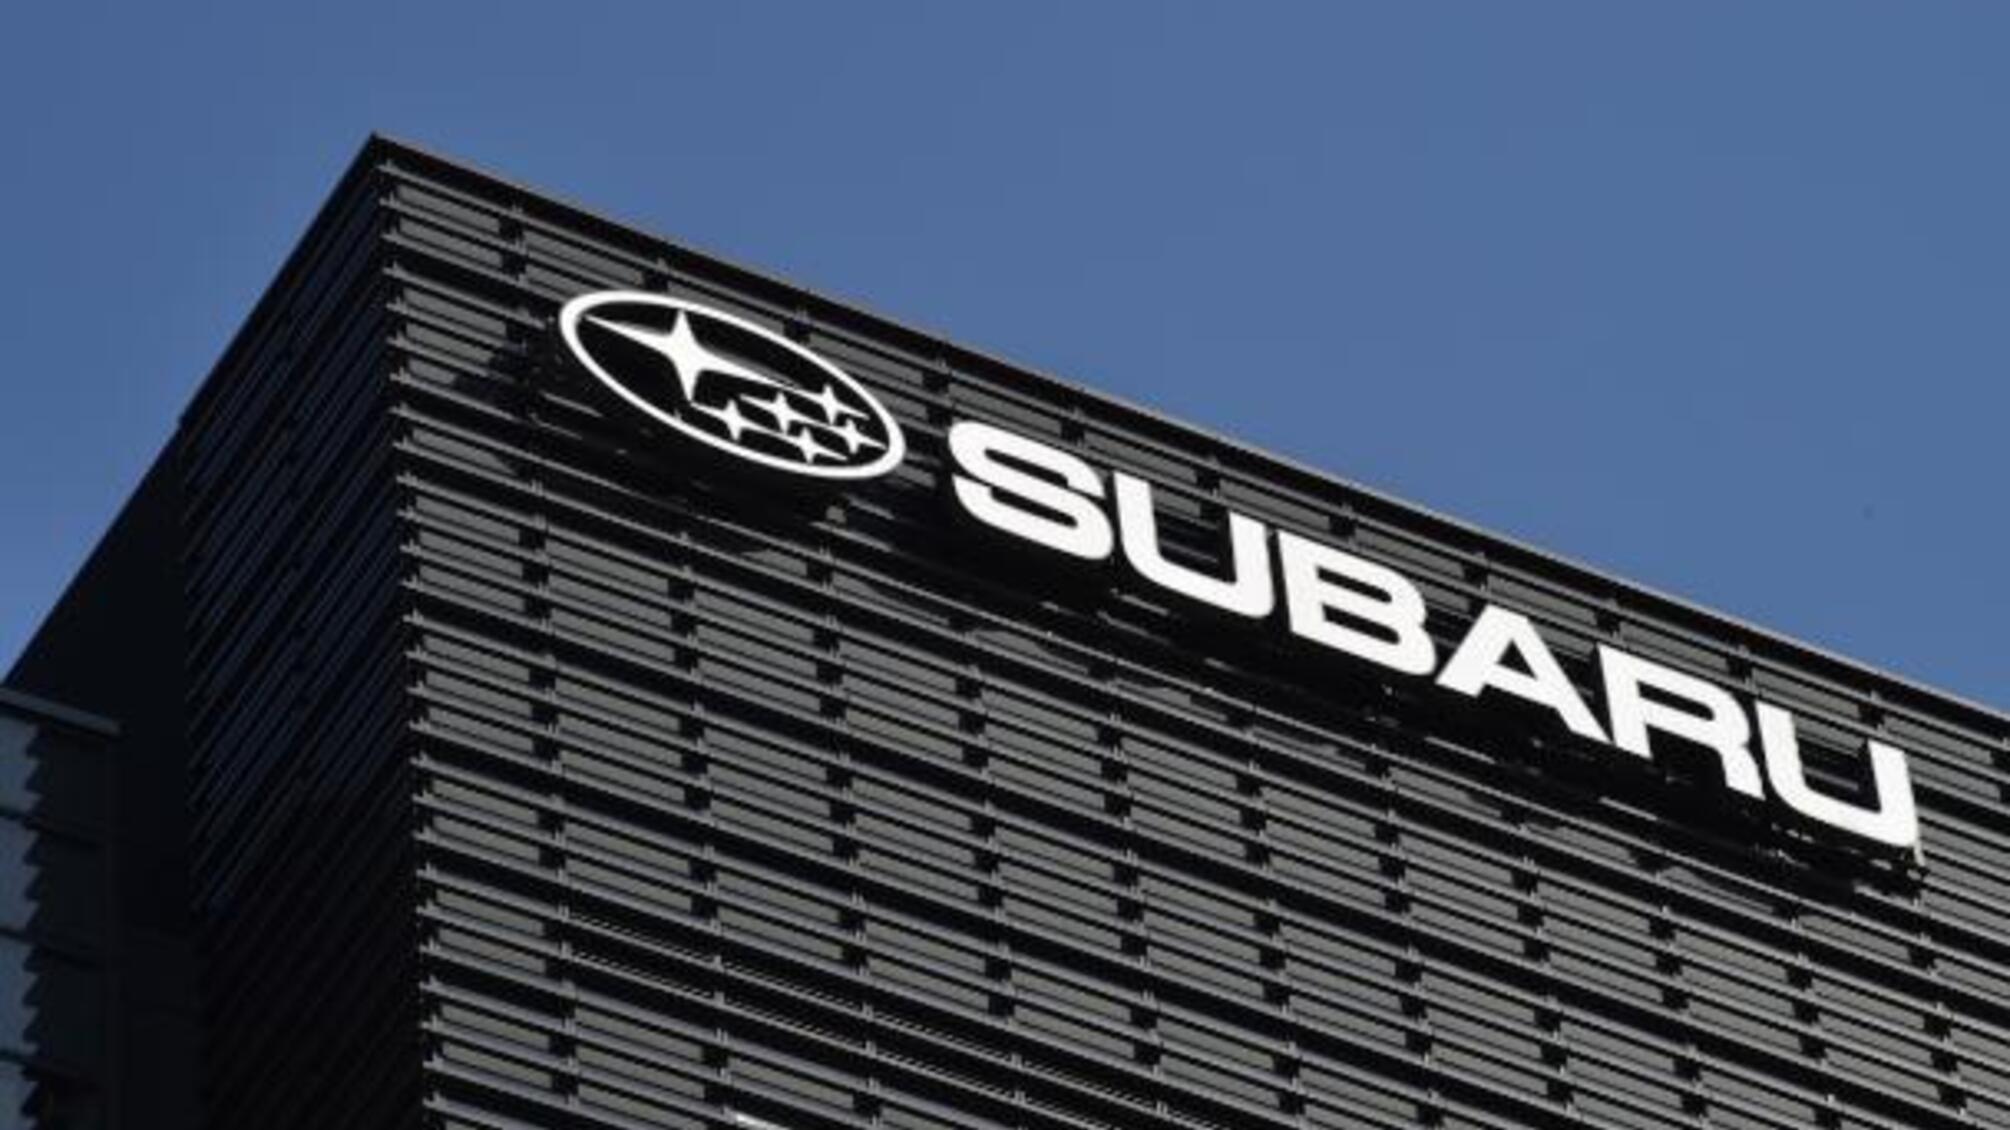 Відмовилась брехати про вихід компанії з рф: Subaru Україна залишила без роботи одиноку матір